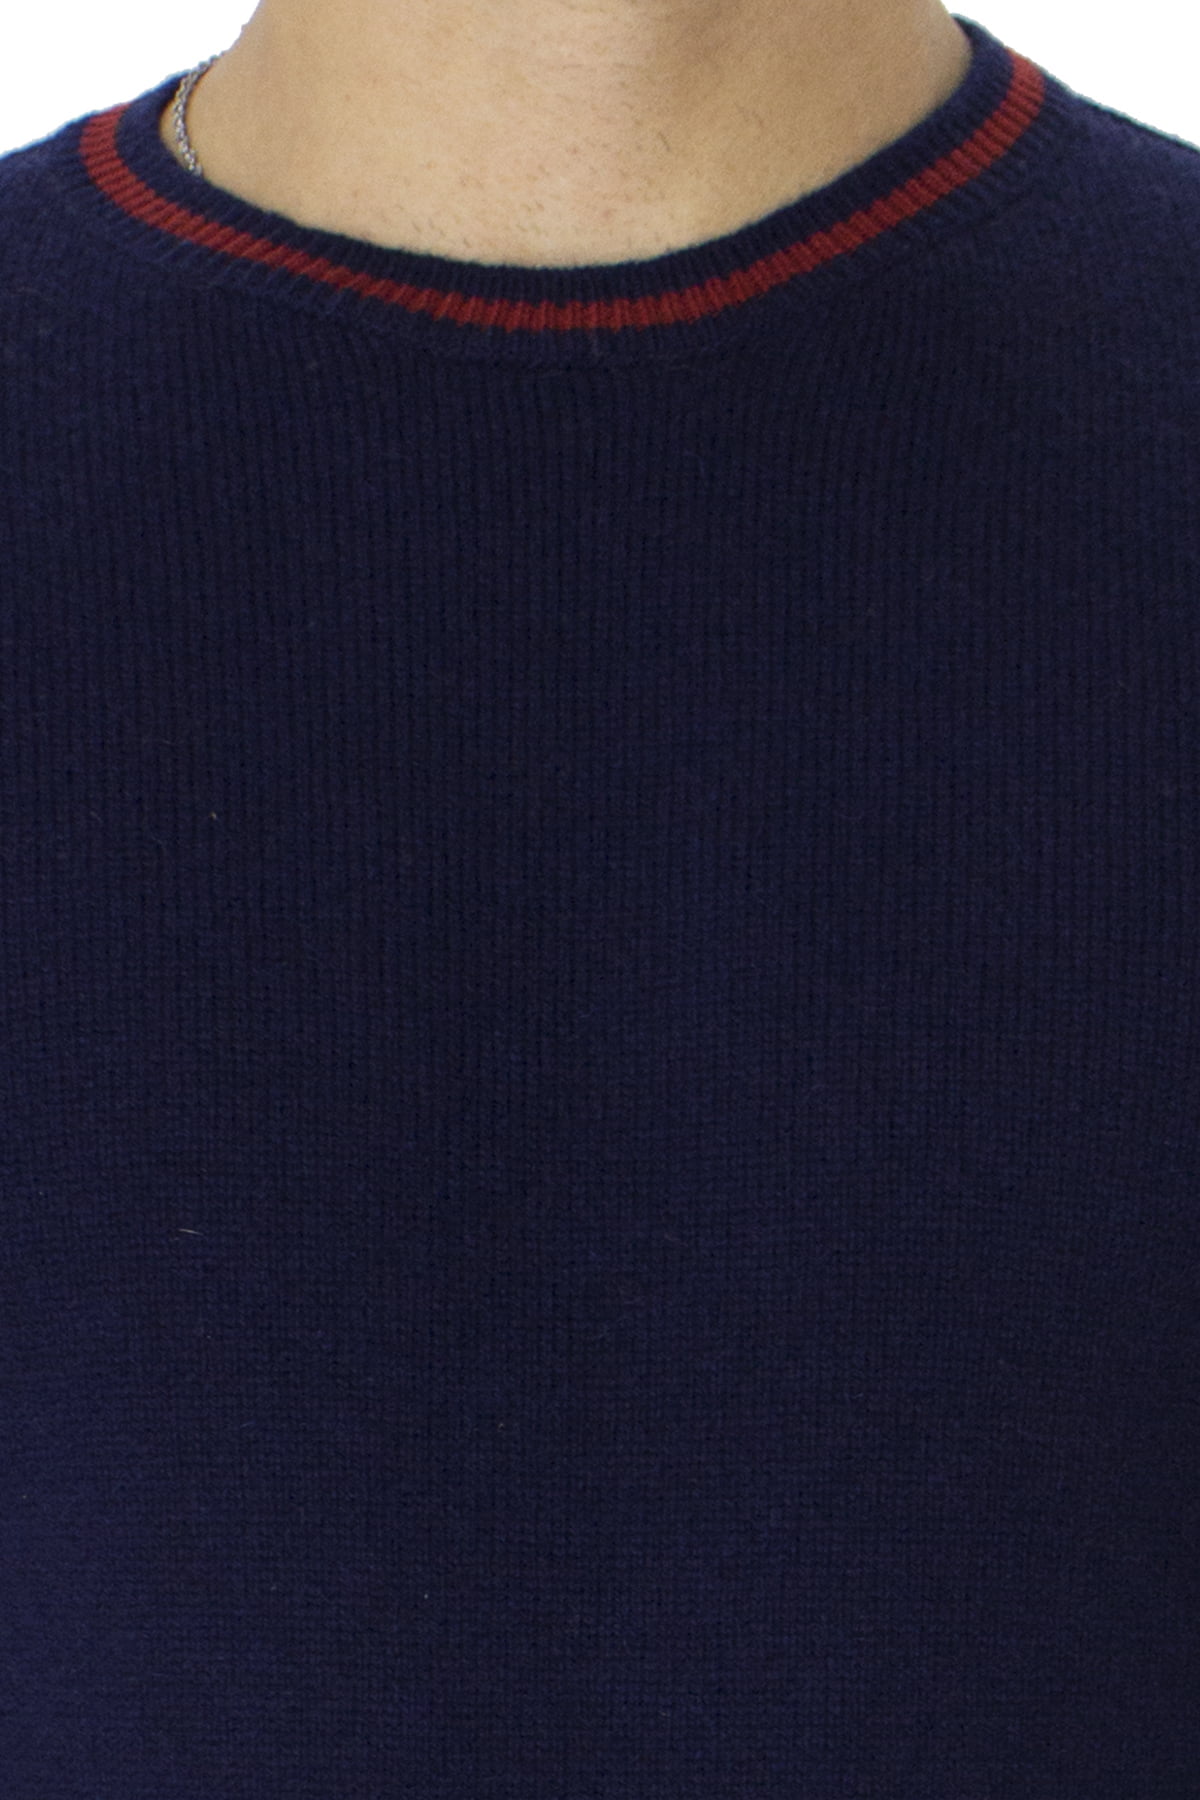 Maglione uomo Girocollo blu in lana merinos con bordini rossi slim fit made in italy